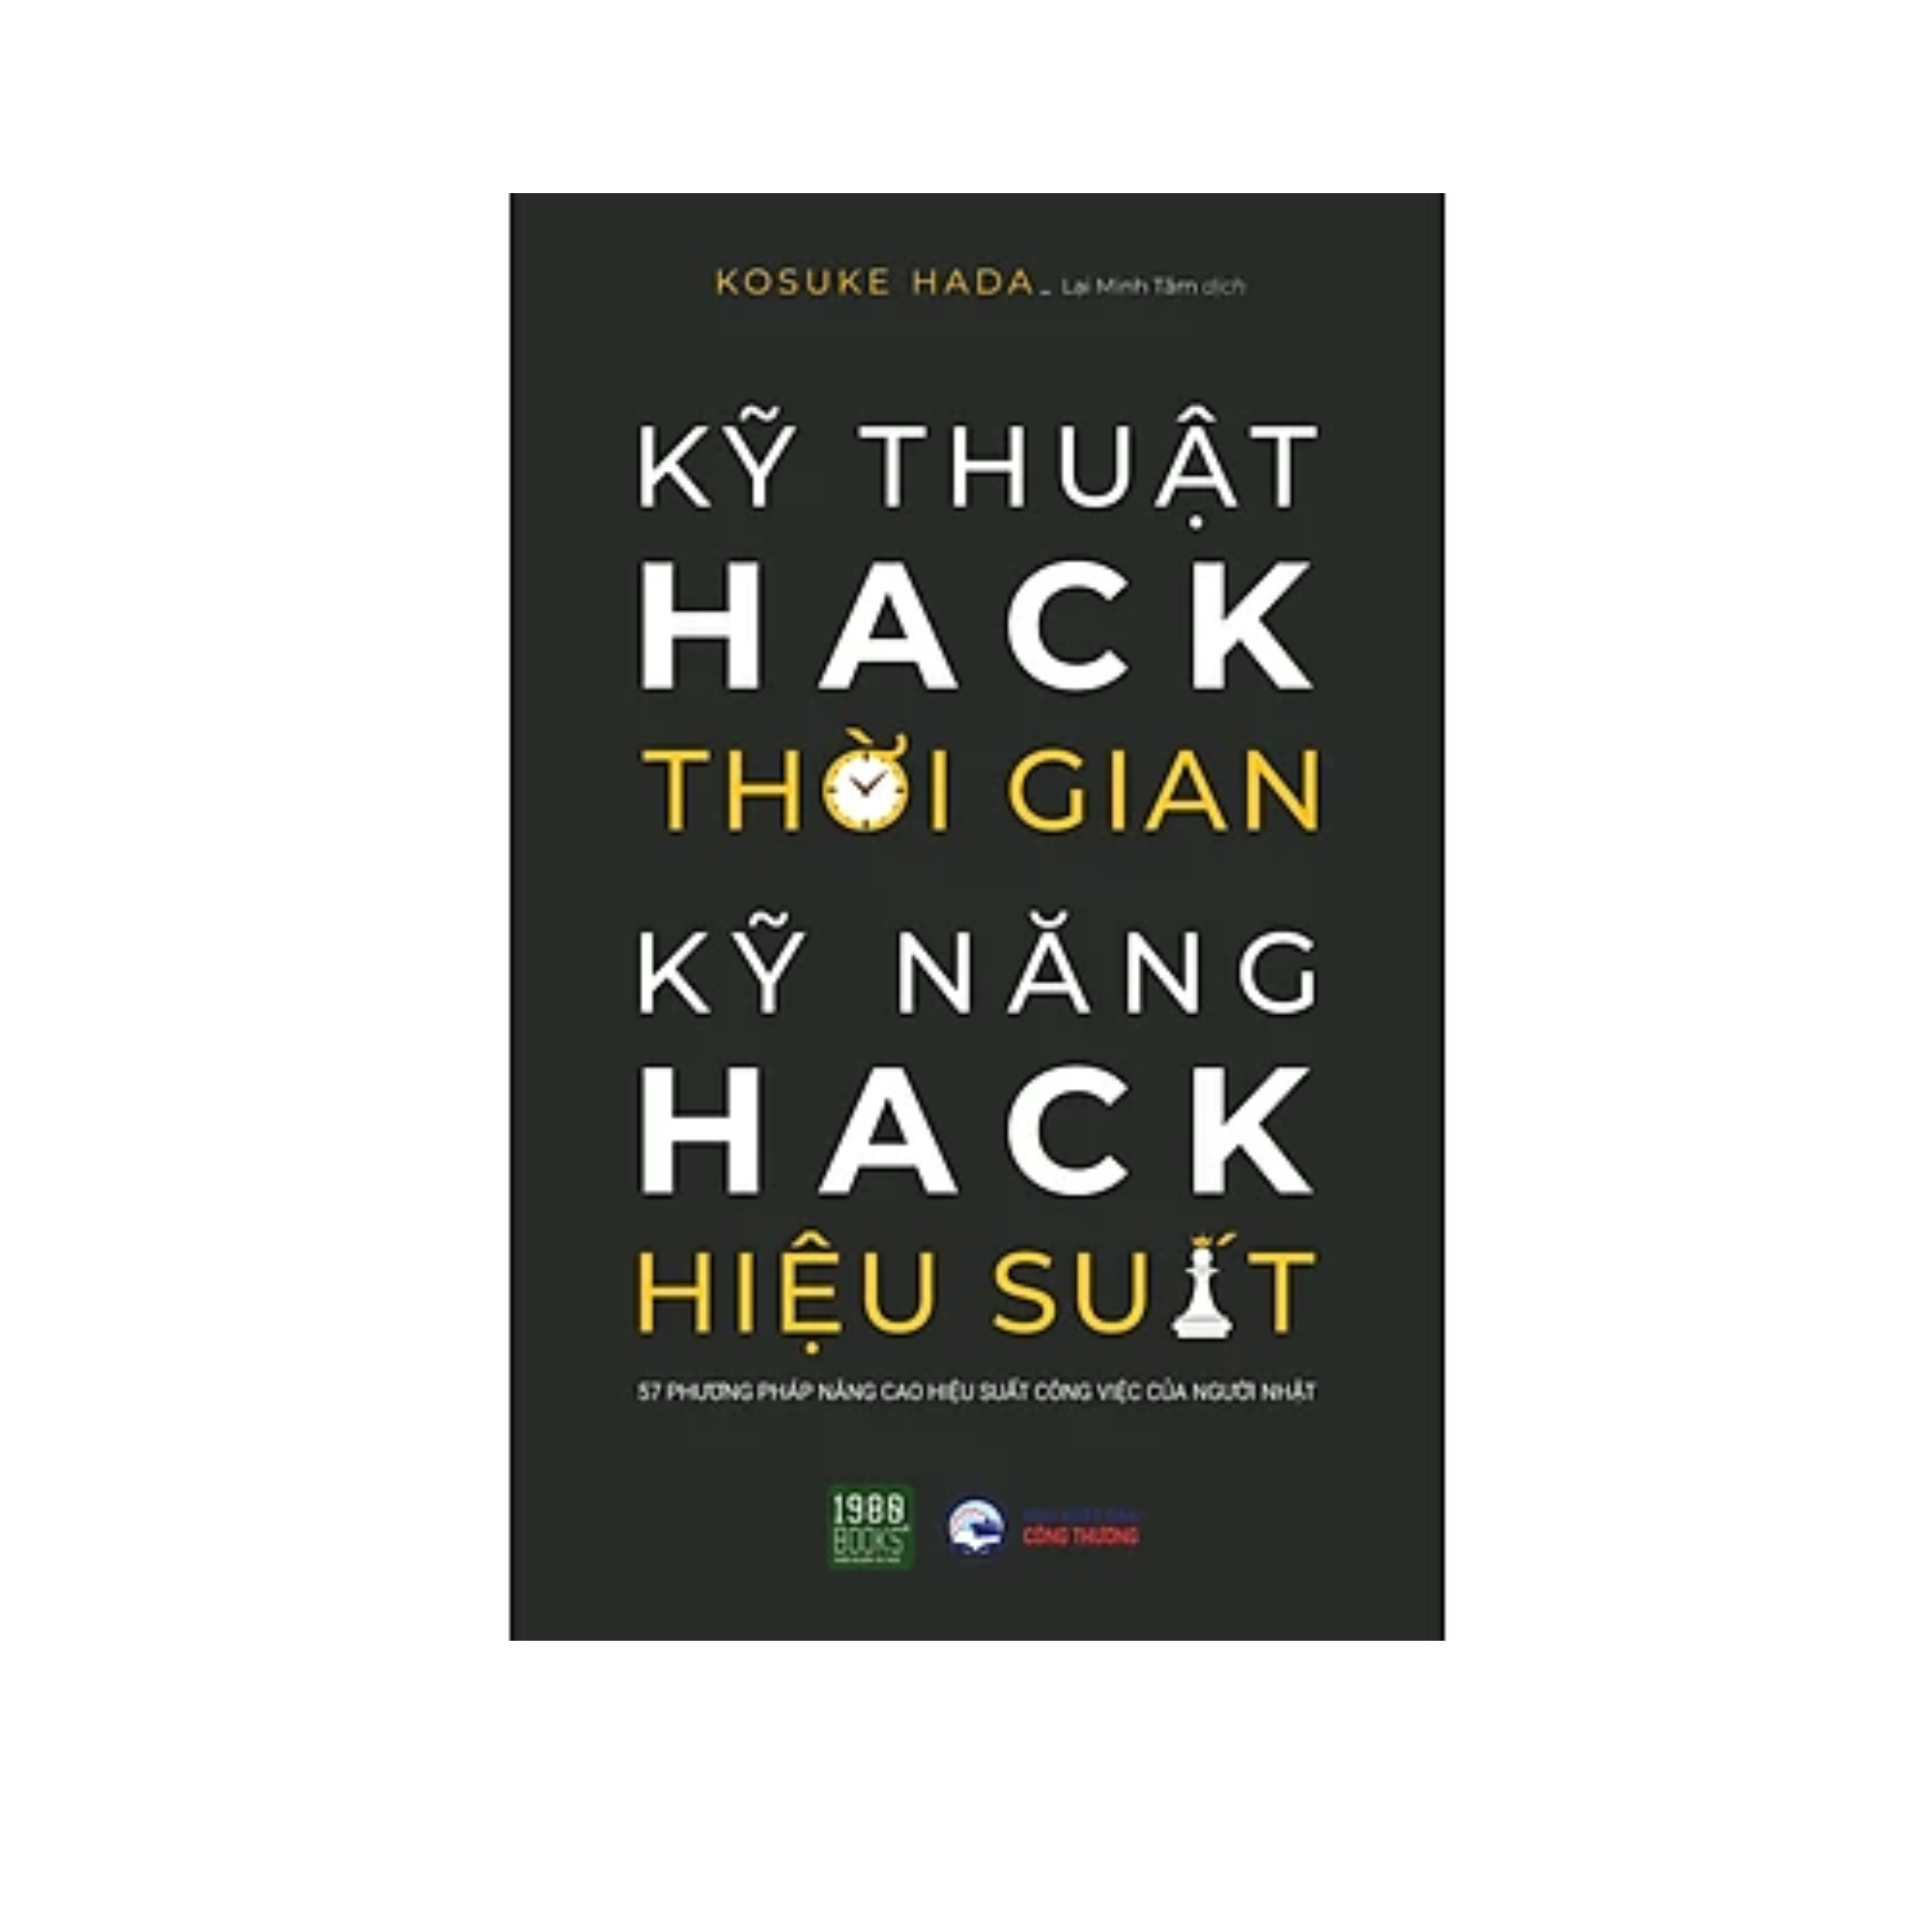 Sách Kĩ Năng Làm Việc : Kĩ Thuật Hack Thời Gian, Kĩ Năng Hack Hiệu Suất 